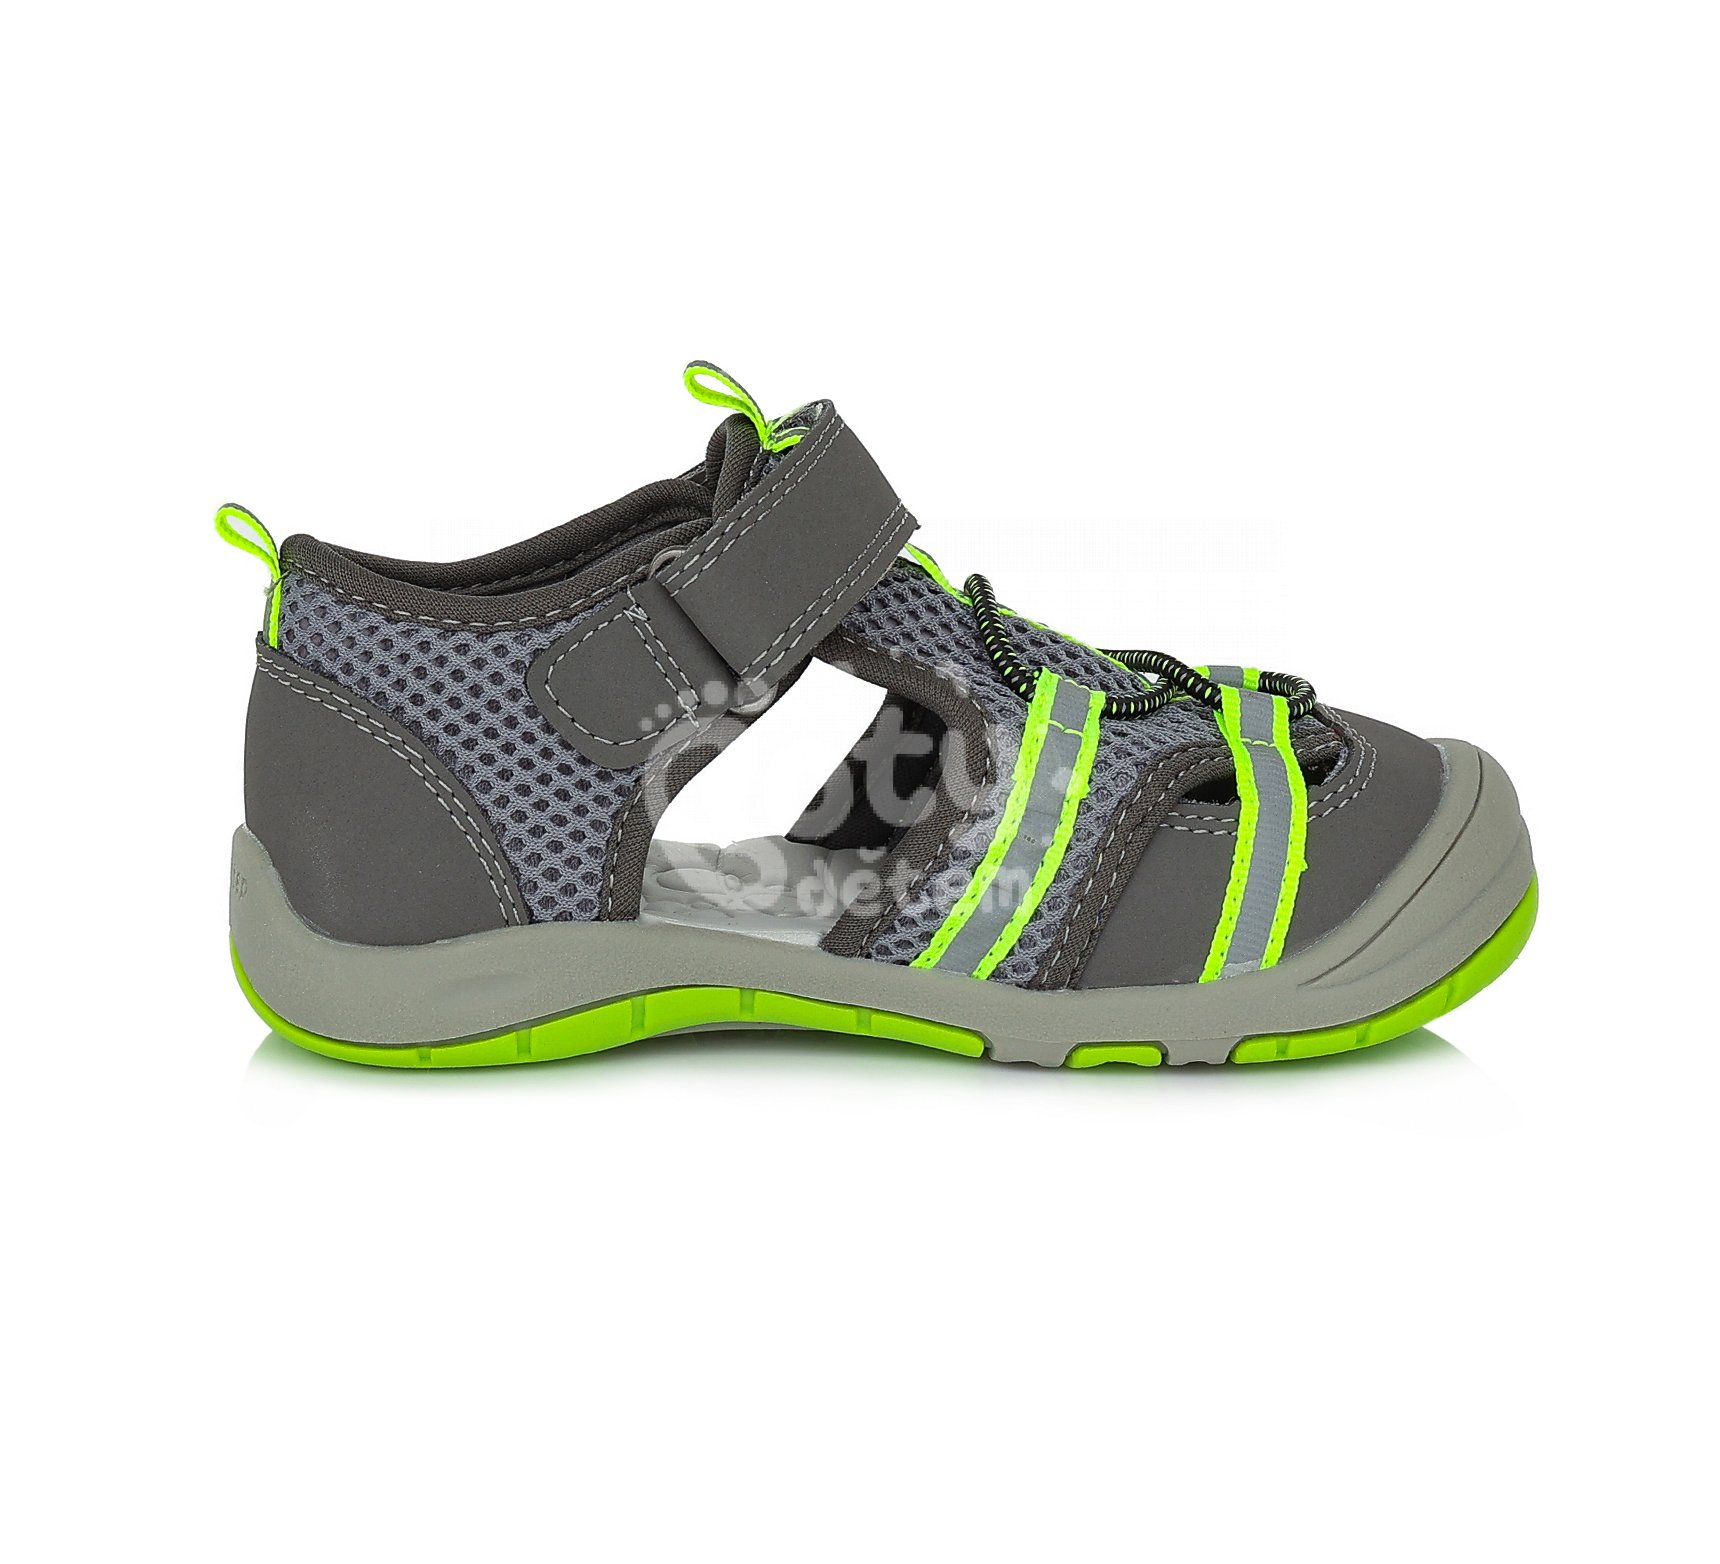 Sportovní sandálky D.D.step AC65-380A Dark Grey